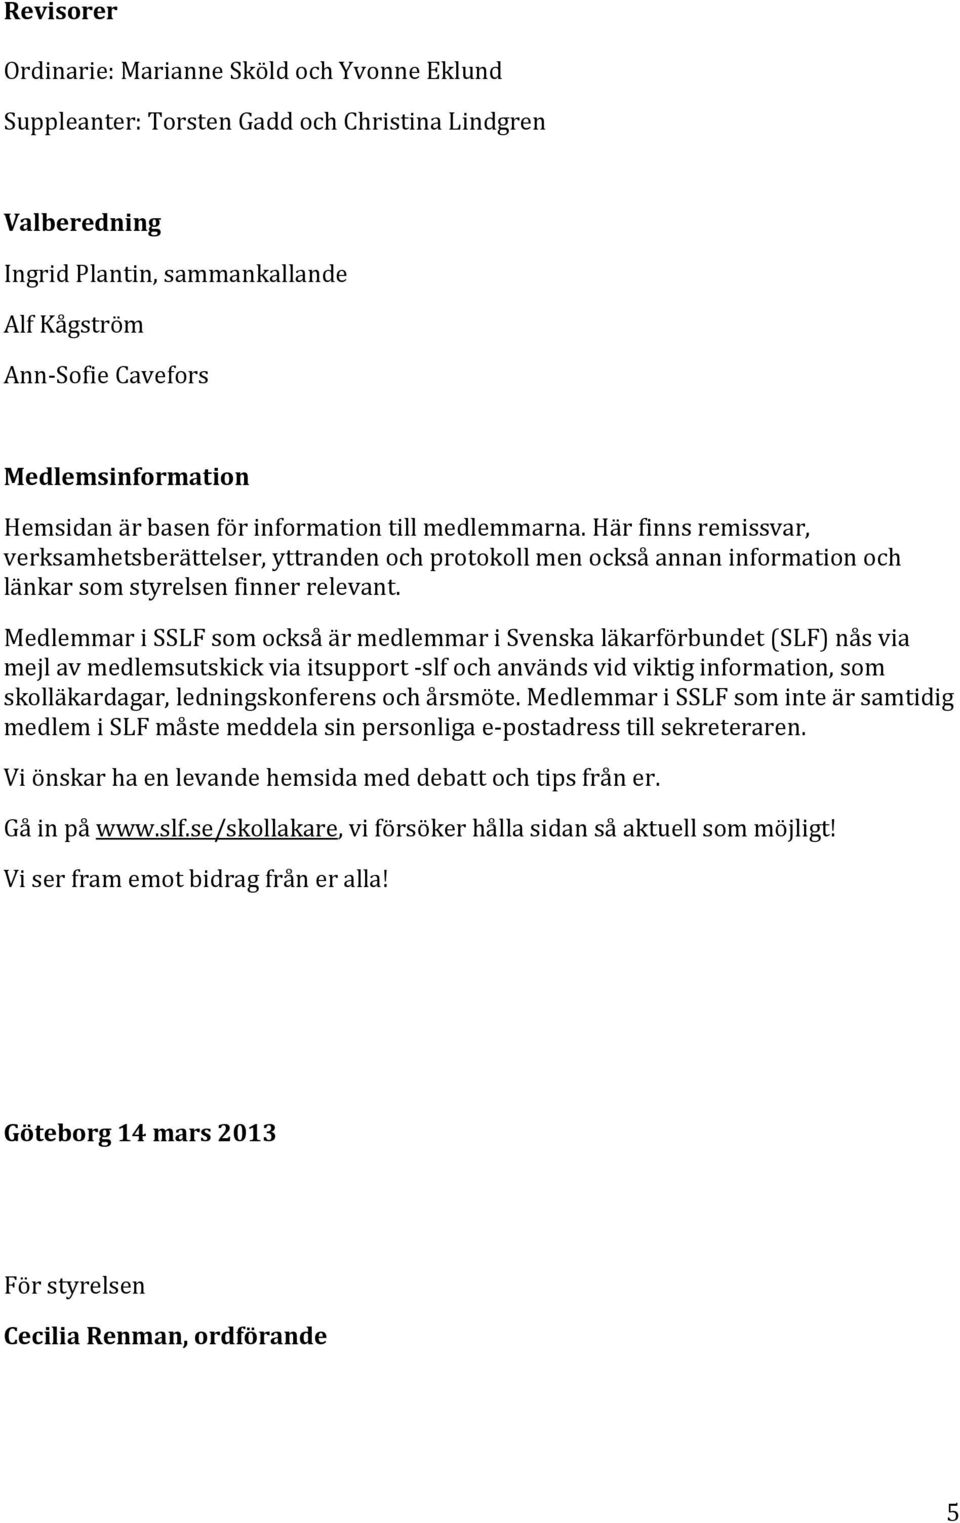 Medlemmar i SSLF som också är medlemmar i Svenska läkarförbundet (SLF) nås via mejl av medlemsutskick via itsupport -slf och används vid viktig information, som skolläkardagar, ledningskonferens och